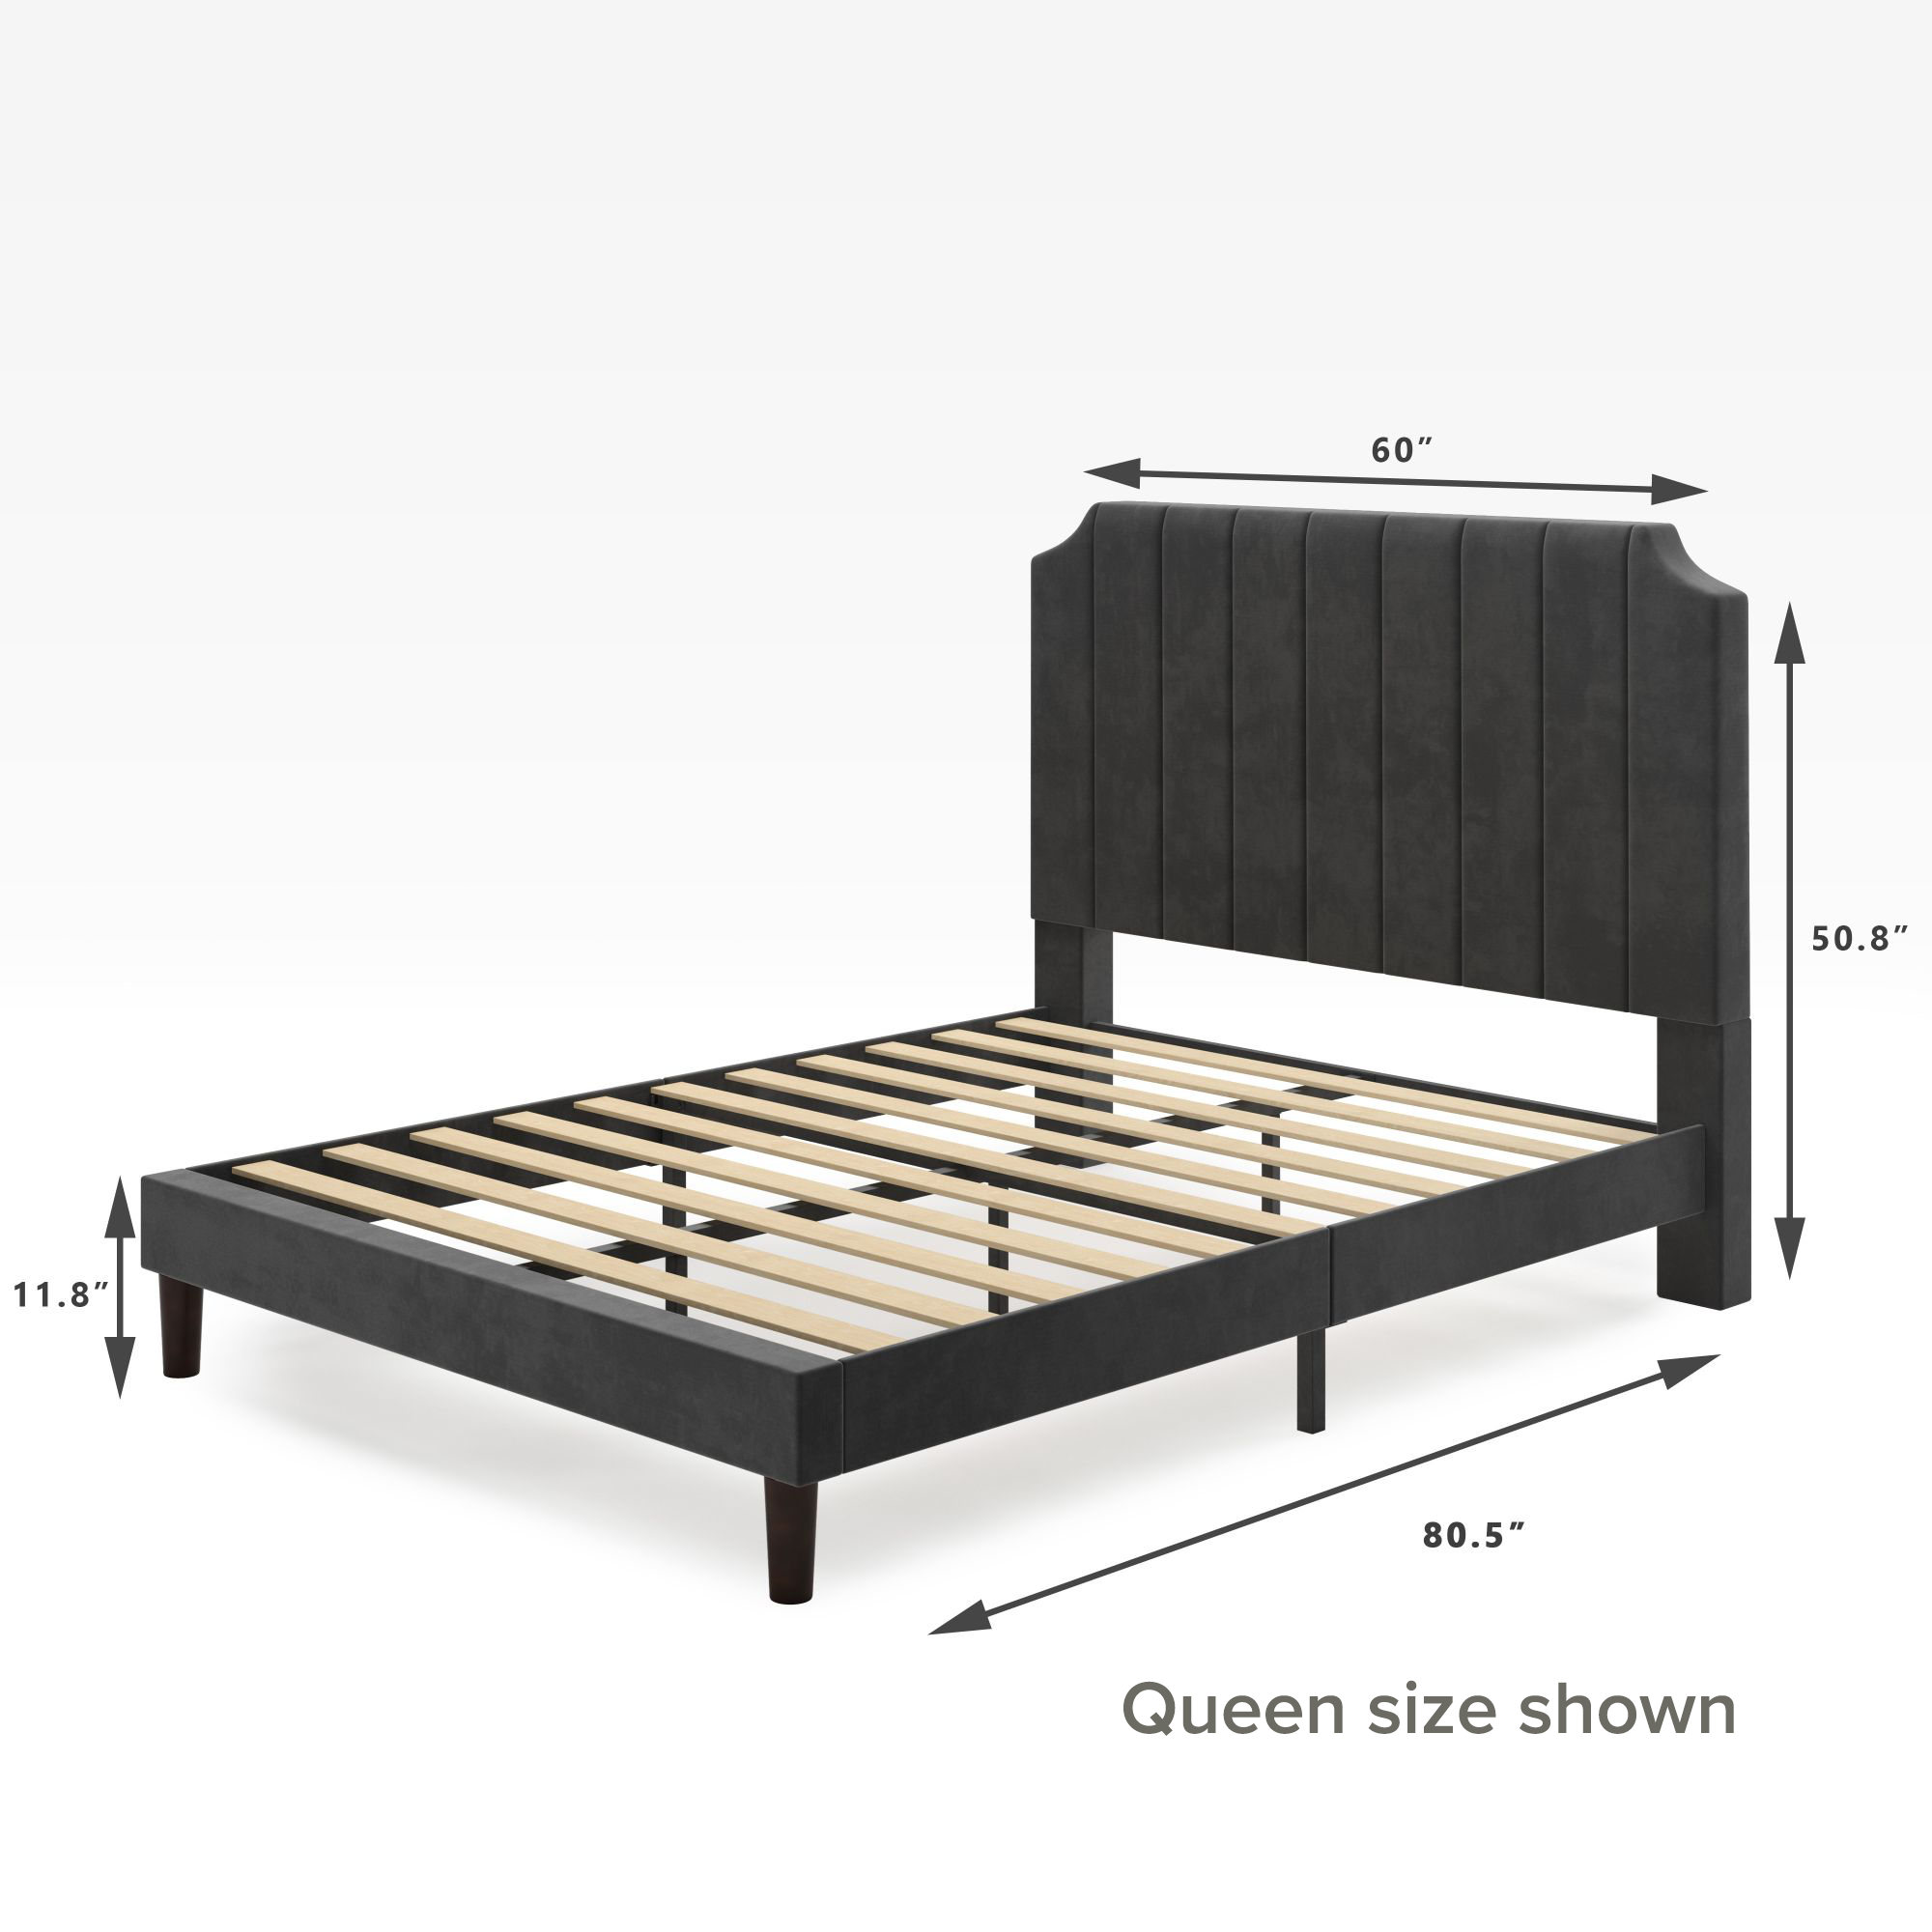 Charlotte upholstered platform bed frame Queen Size dimensions